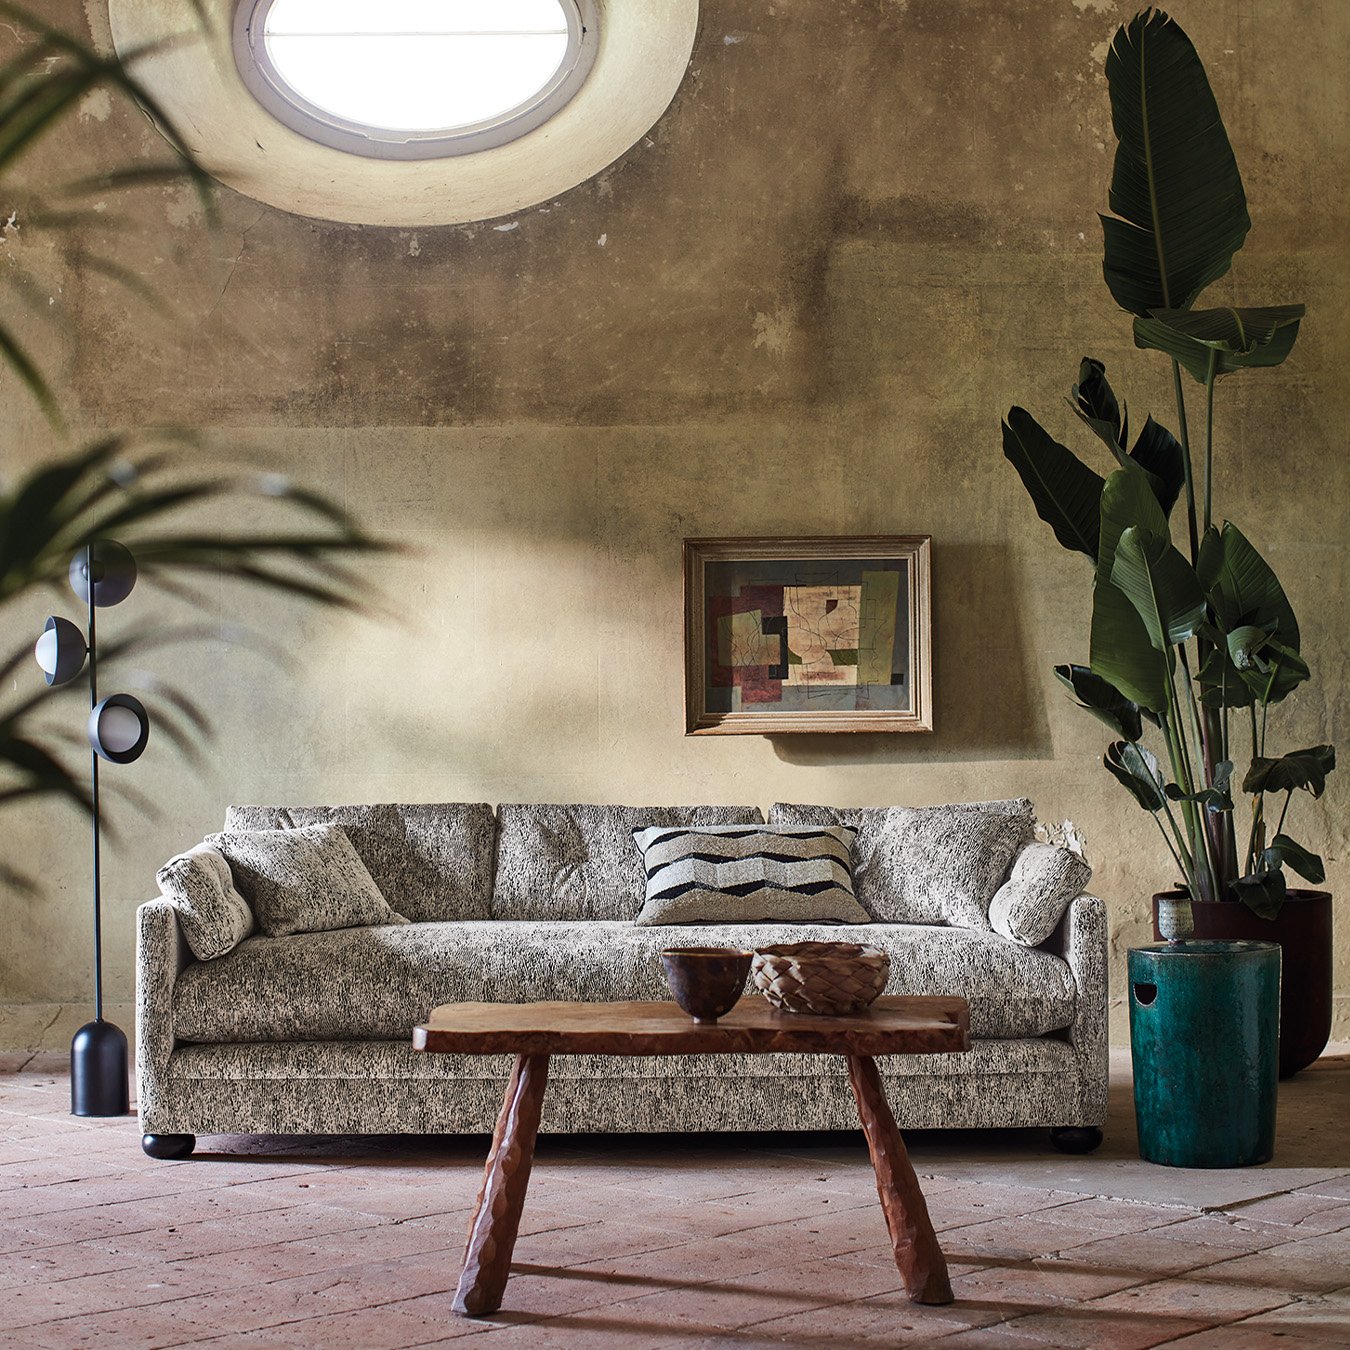 Sisustuskuva tilasta, jossa keskiössä vaalea struktuuripintainen sohva, sekä viherkasvit.